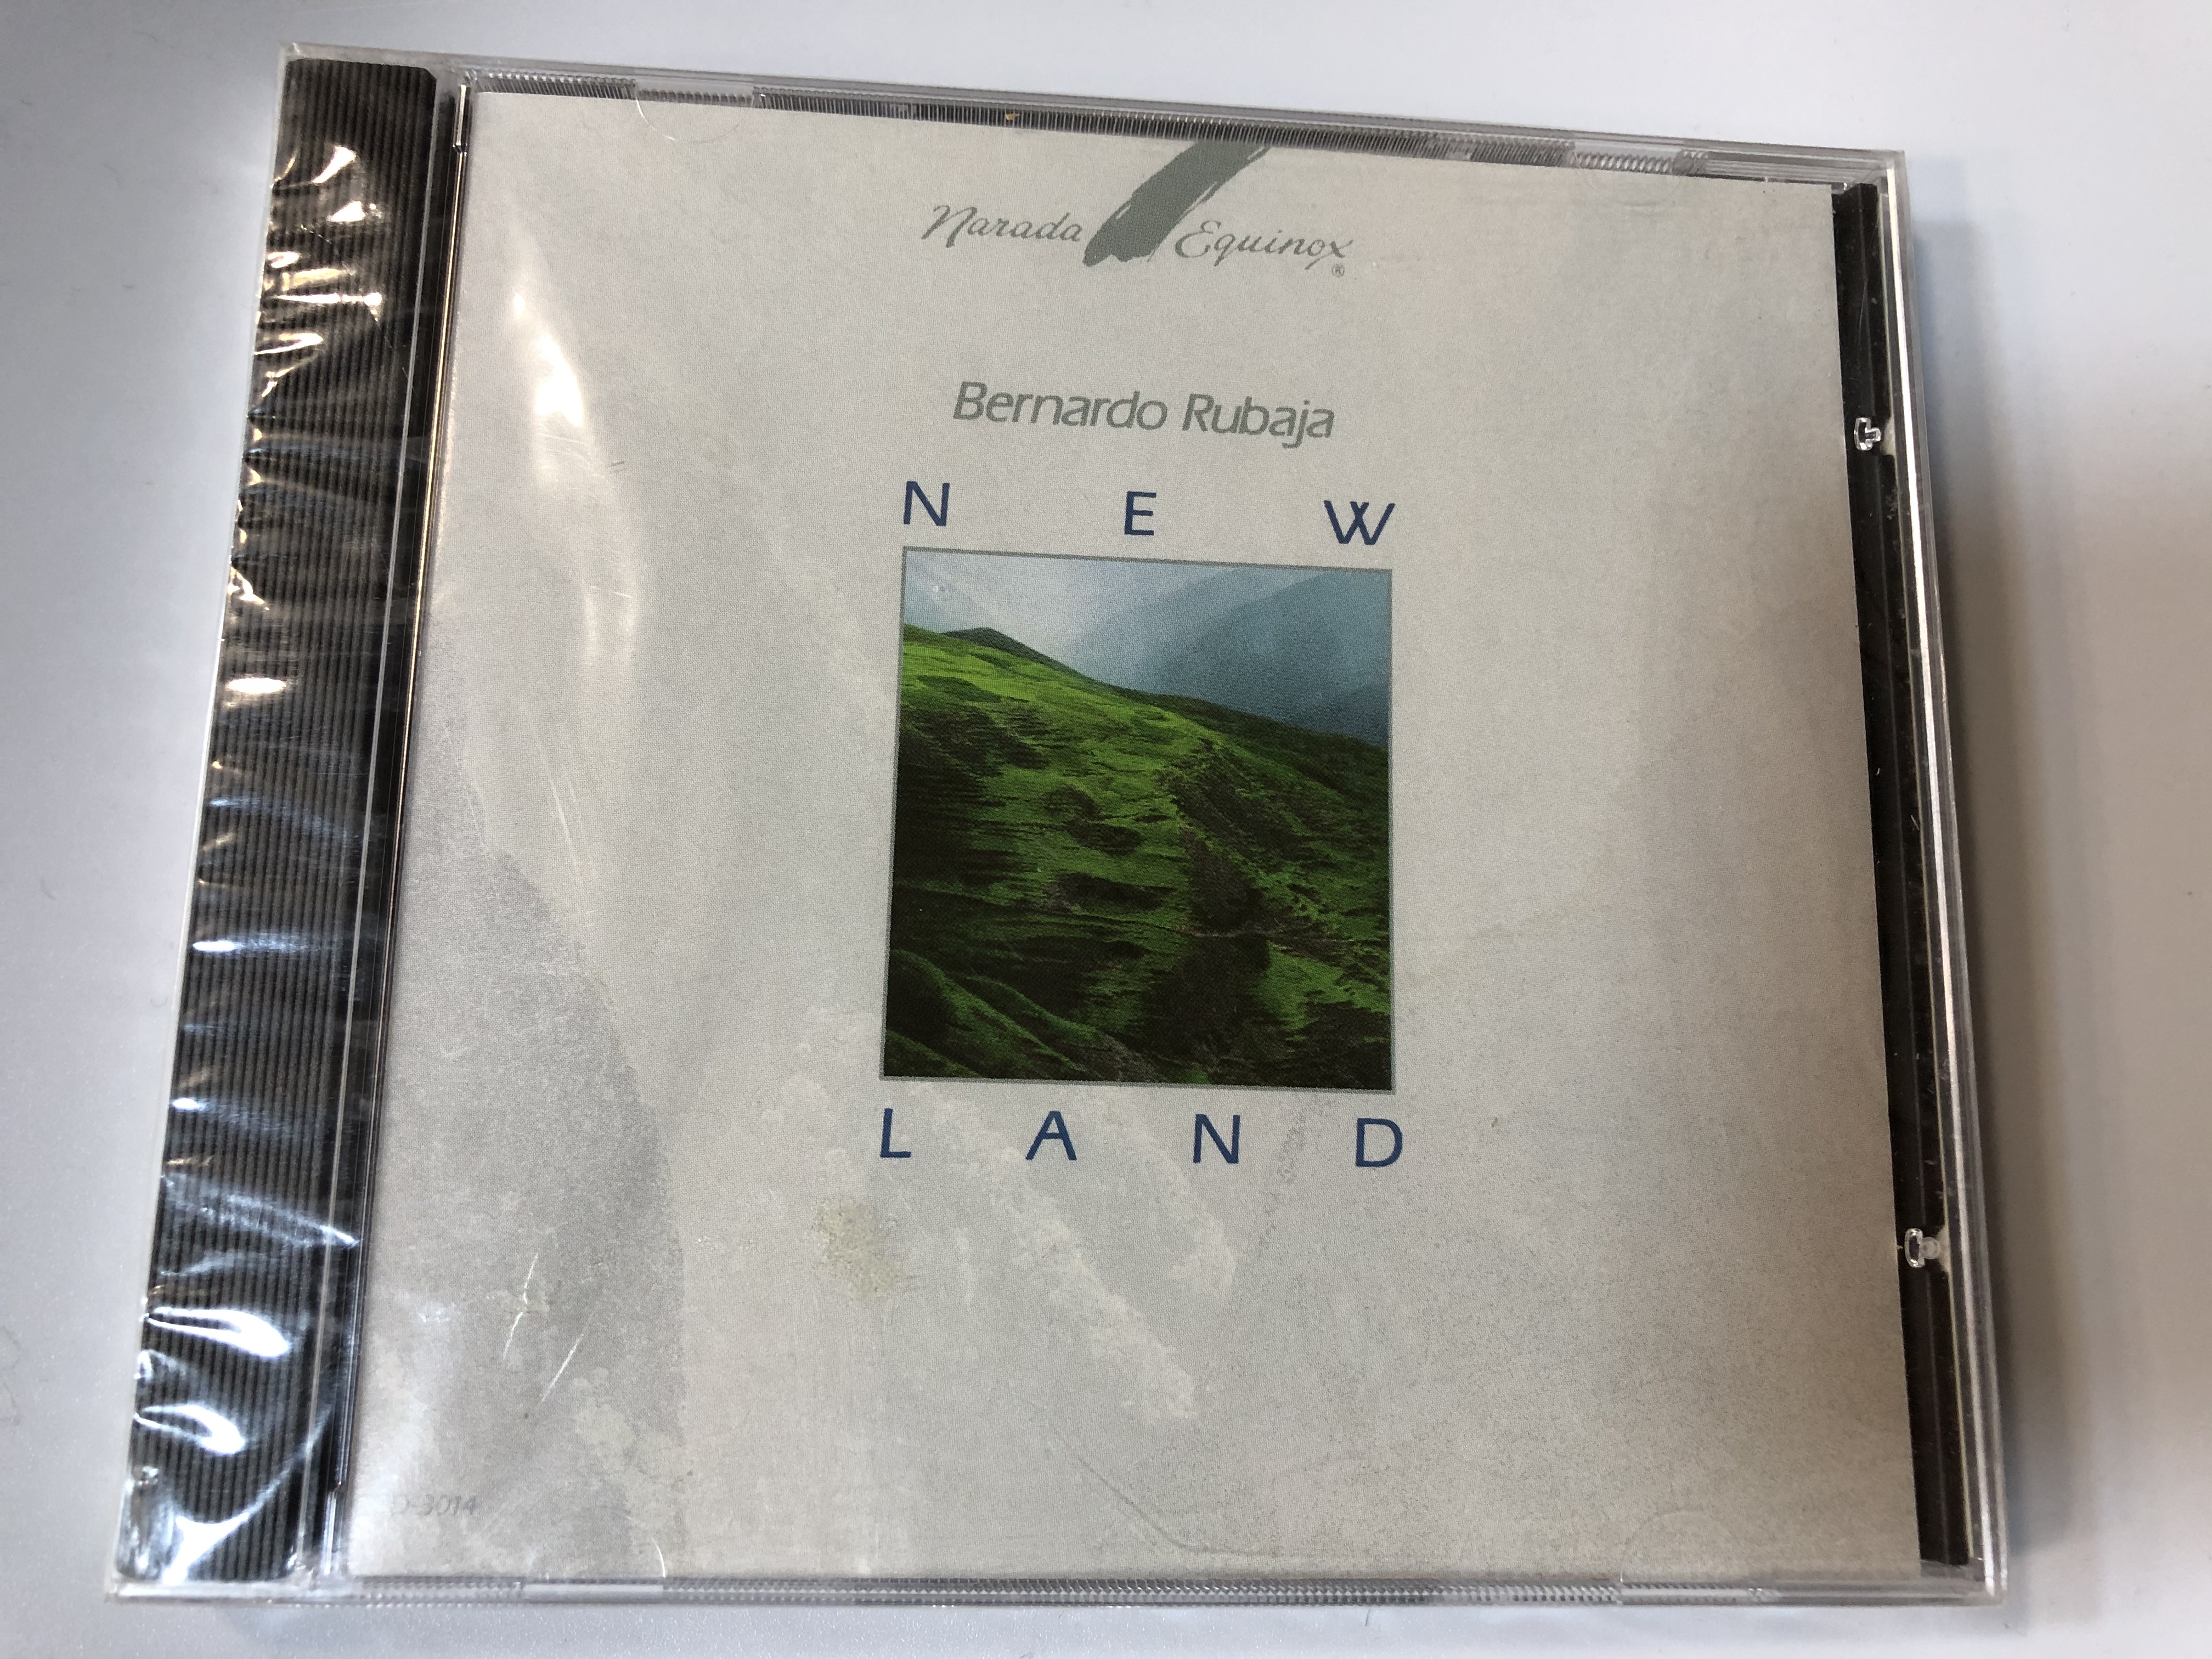 bernardo-rubaja-new-land-narada-equinox-audio-cd-1990-cd-3014-1-.jpg